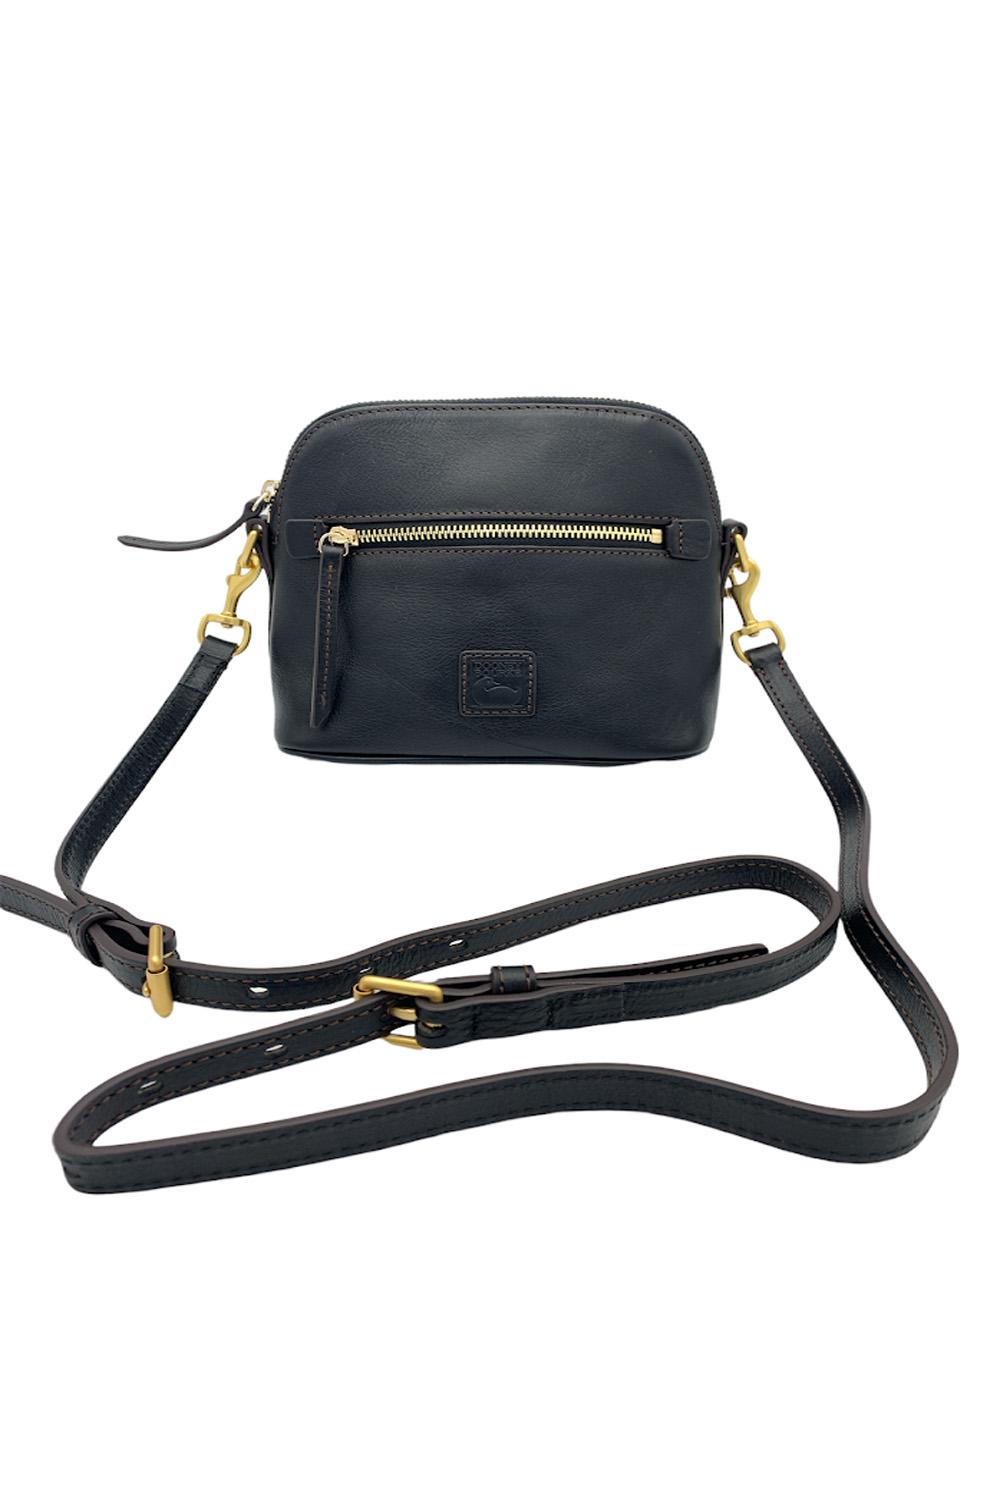 Dooney & Bourke Florentine Camera Zip Crossbody Shoulder Bag